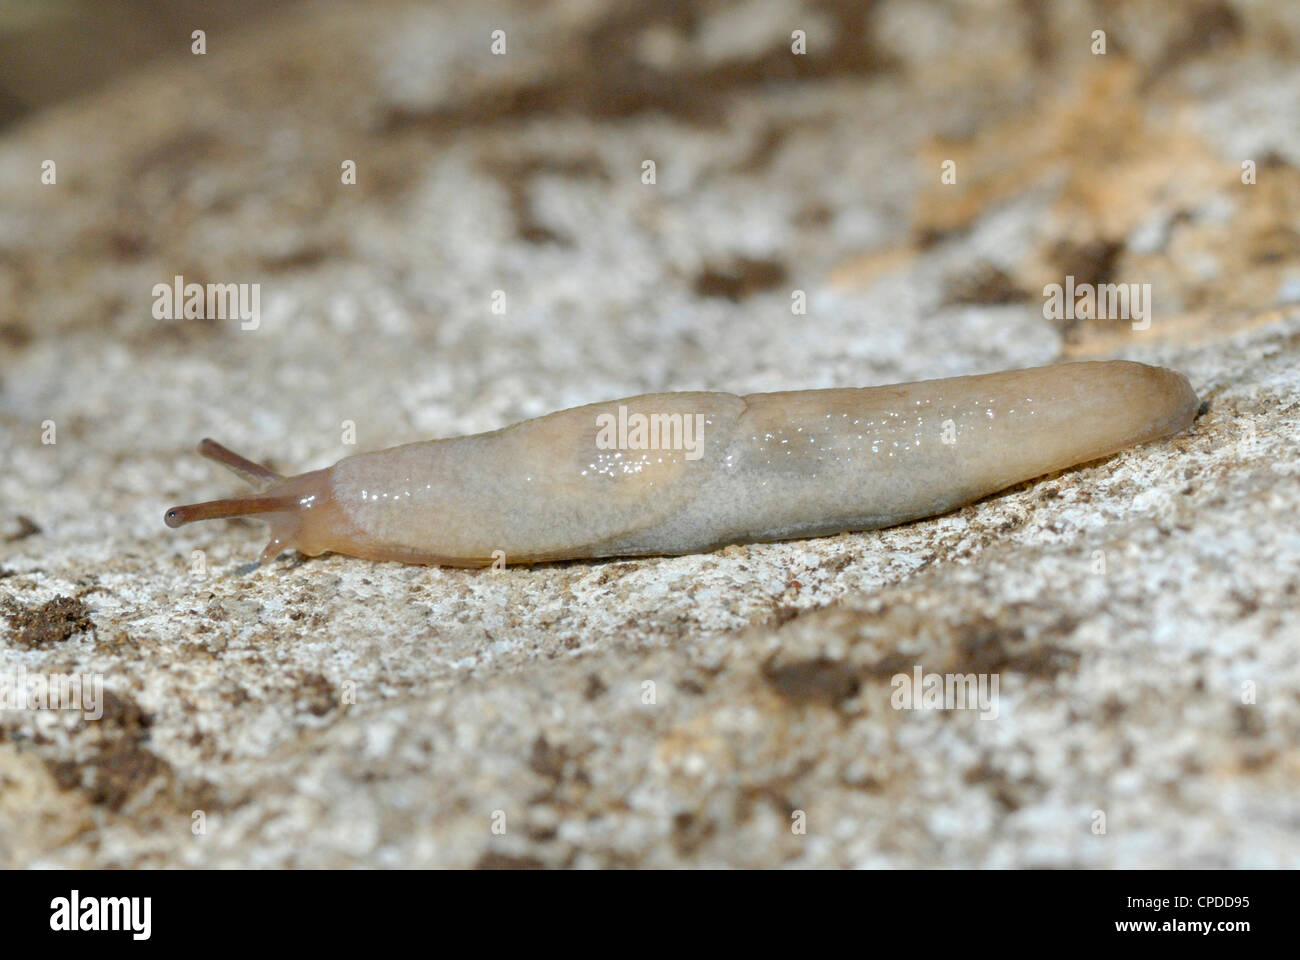 Common Grey Garden Slug (Deroceras reticulatum) Stock Photo